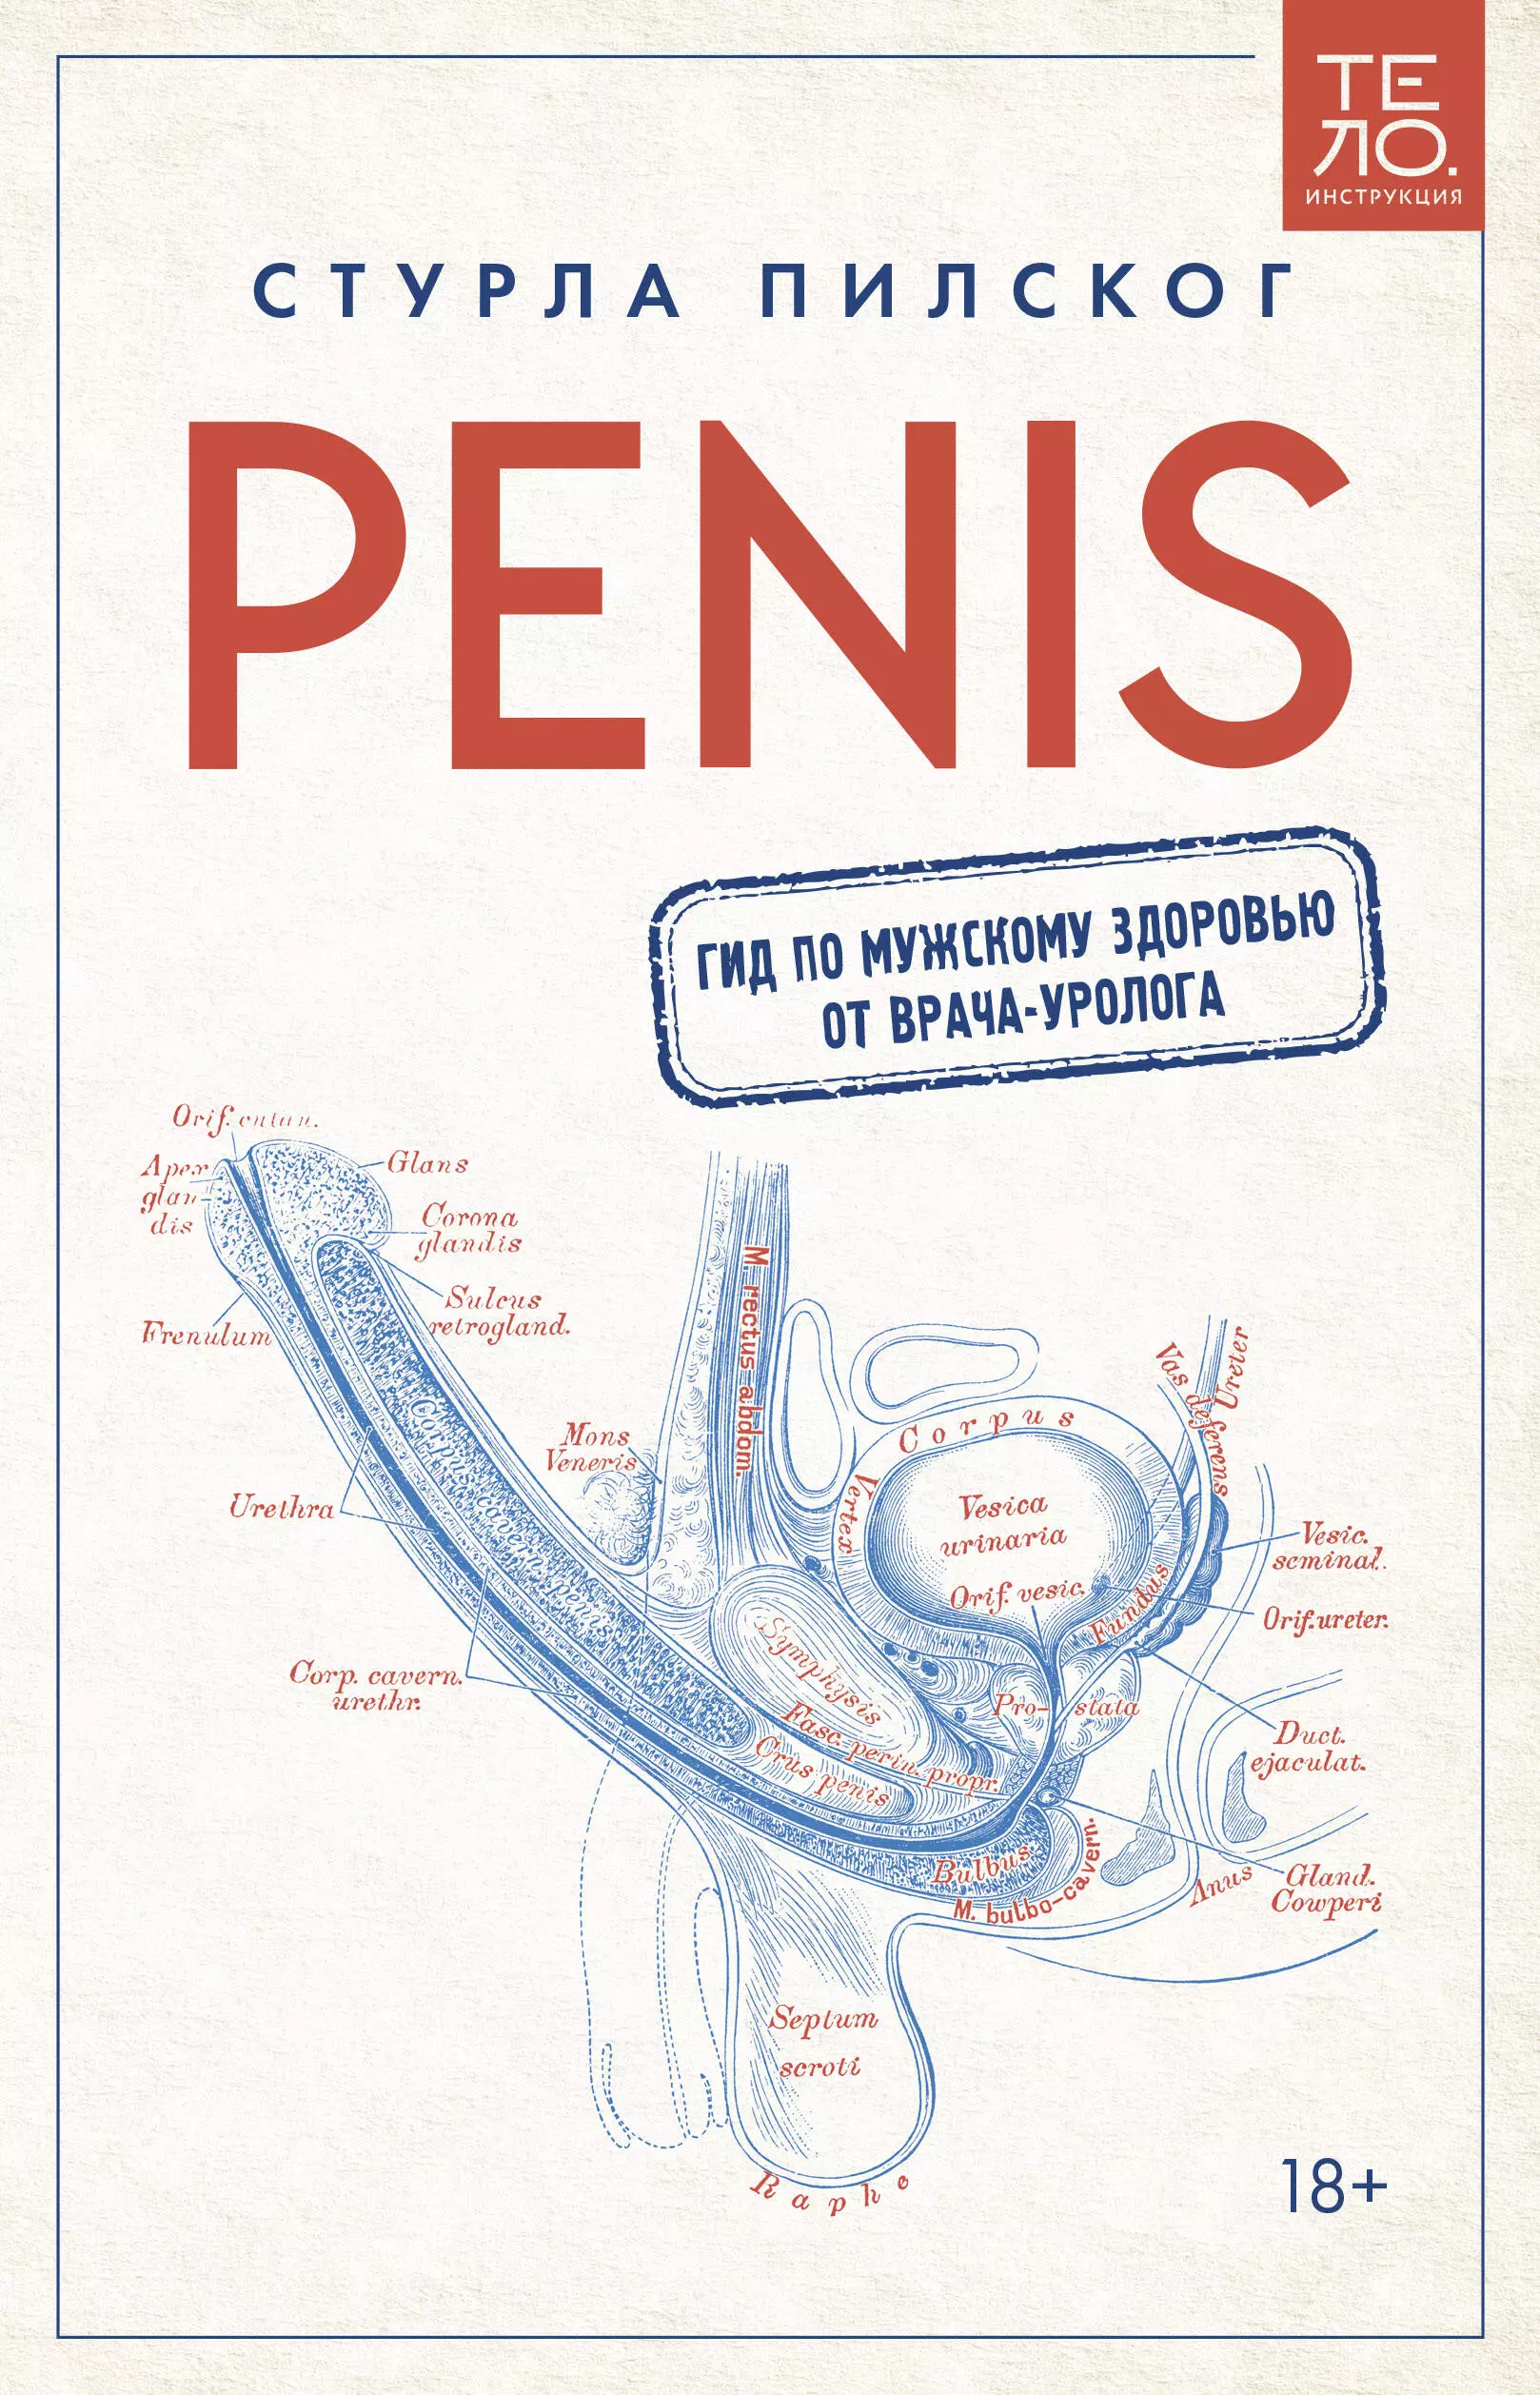 Пилског Стурла Penis. Гид по мужскому здоровью от врача-уролога